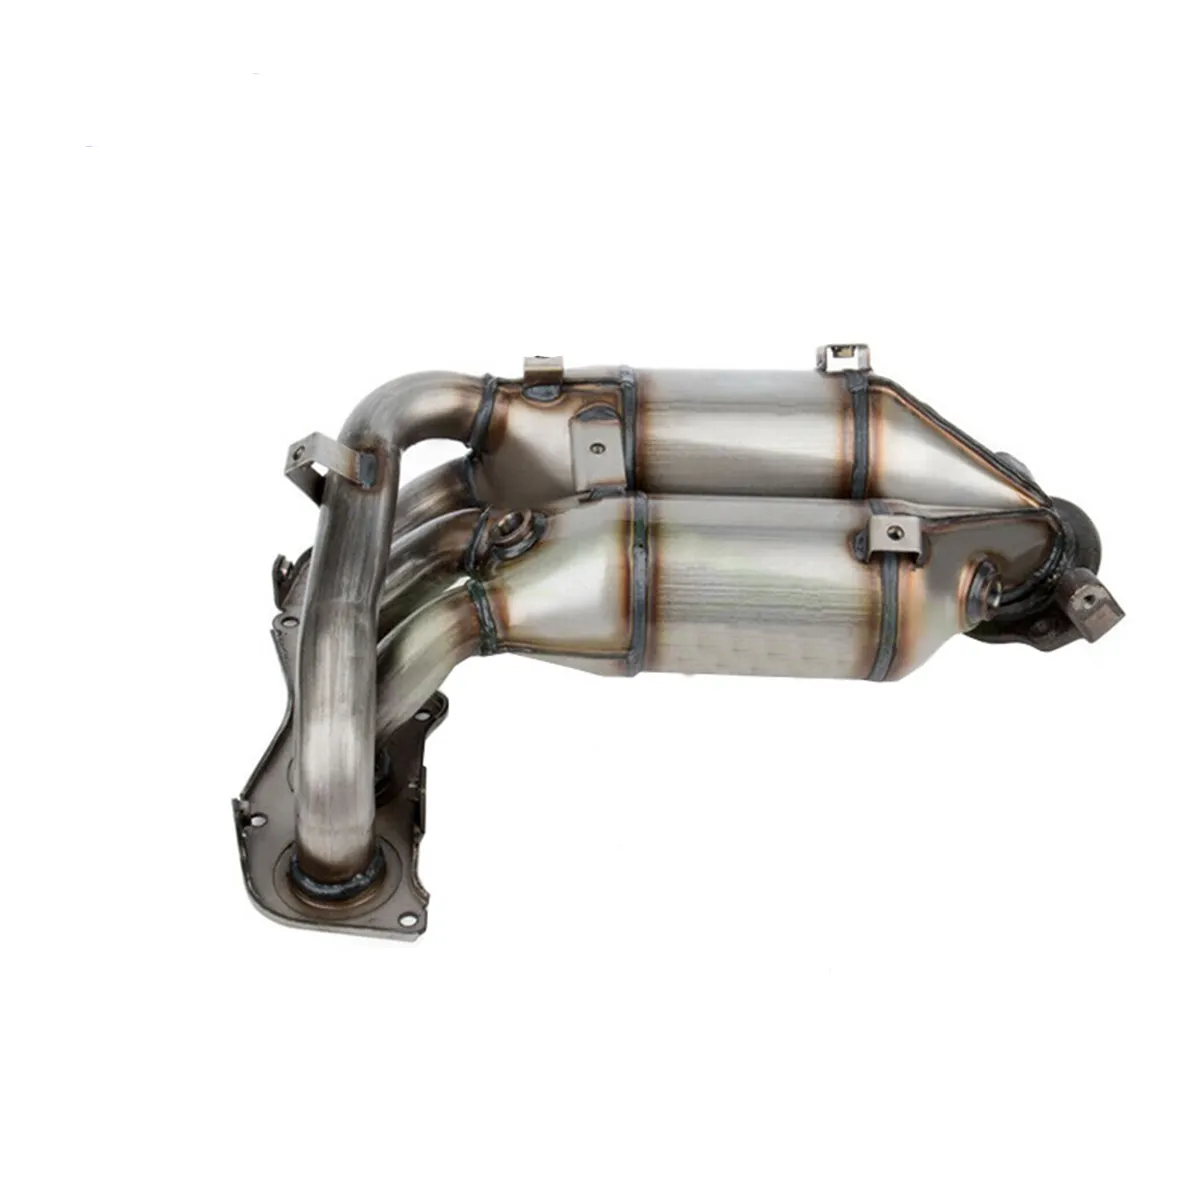 Le convertisseur catalytique de haute qualité convient à la purification des gaz d'échappement automobile Toyota Camry RAV4 Europe Euro 4